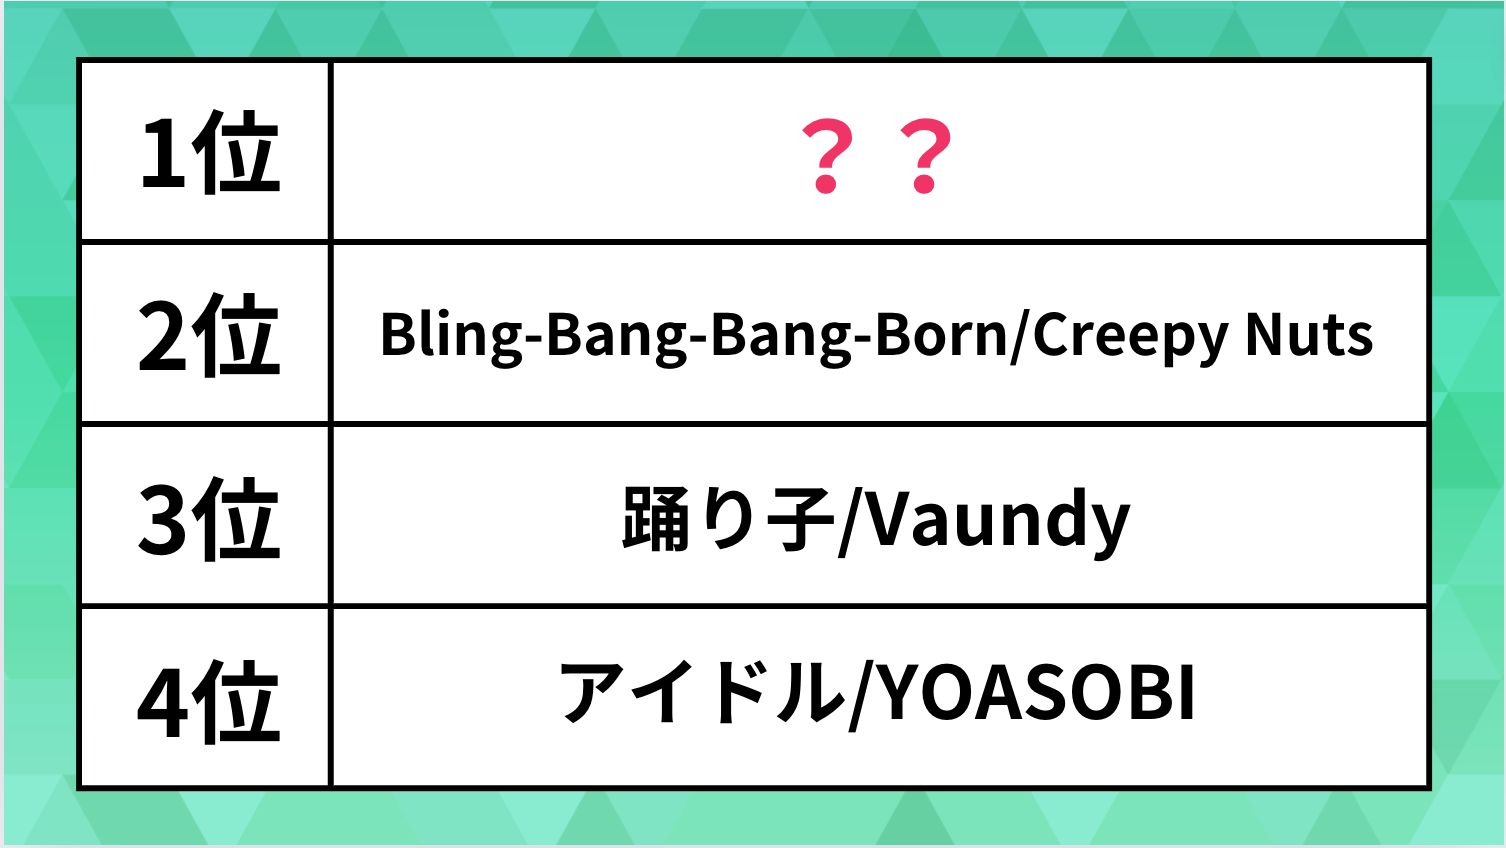 いま世界で人気の日本の曲がこれだ。「踊り子」や「Bling-Bang-Bang-Born」を抑えた1位は？【ビルボード音楽ランキング】 | ハフポスト  アートとカルチャー